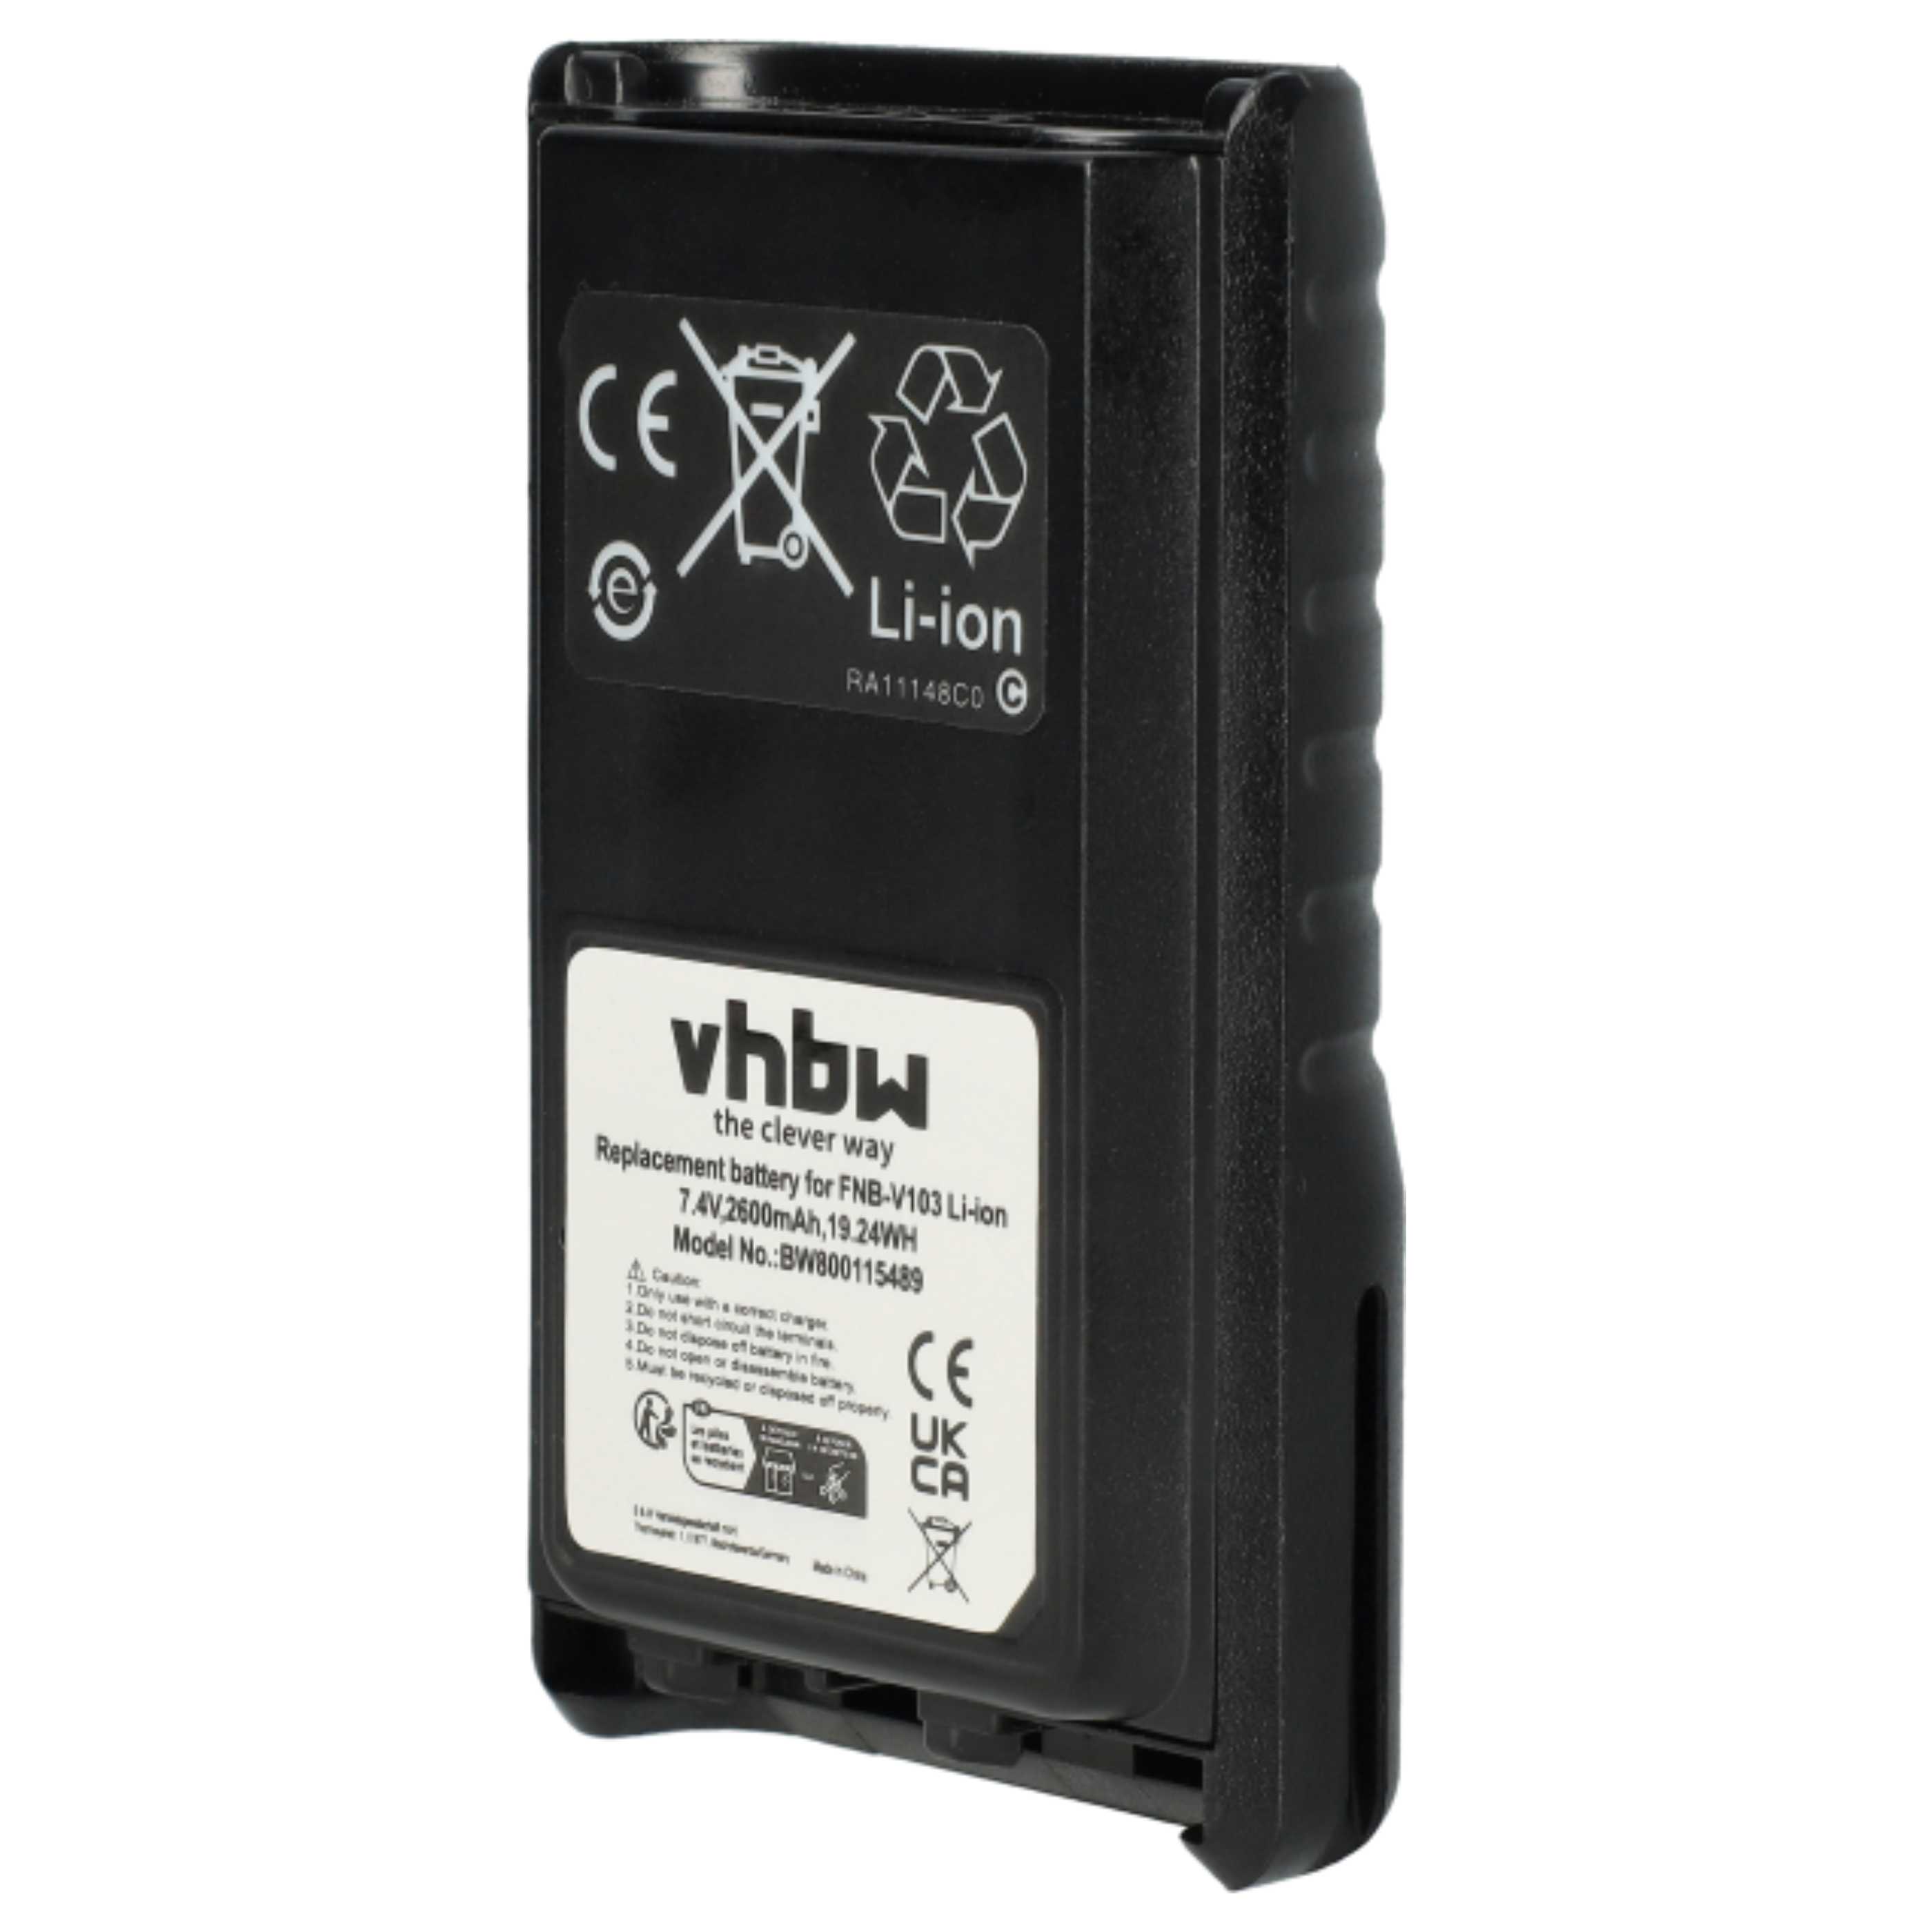 Radio Battery Replacement for Yaesu / Vertex FNB-V132Li, FNB-V131Li - 2600mAh 7.4V Li-Ion